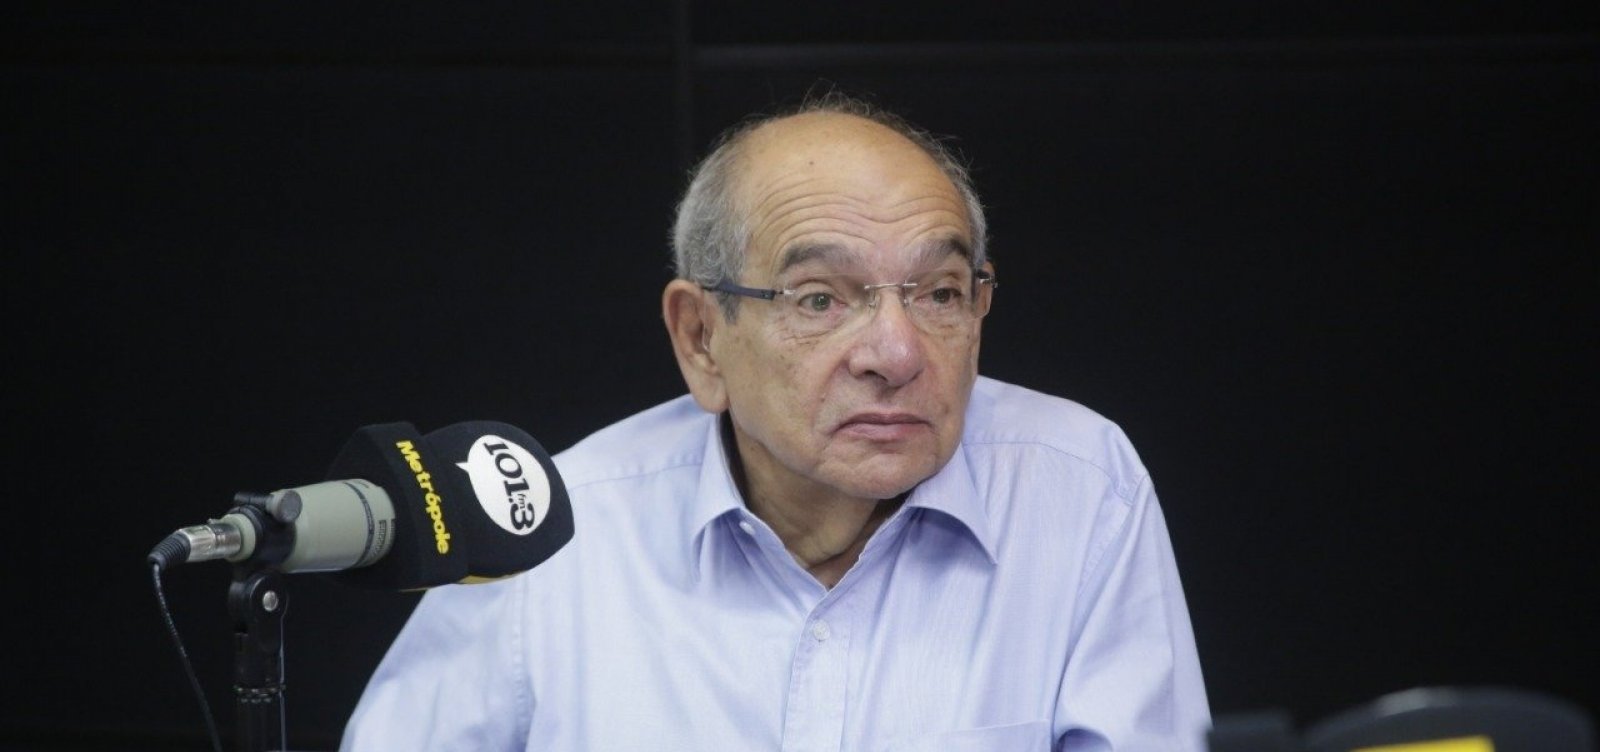 MK critica falta de plano de Guedes para crise diante do coronavírus: 'População está em desamparo'